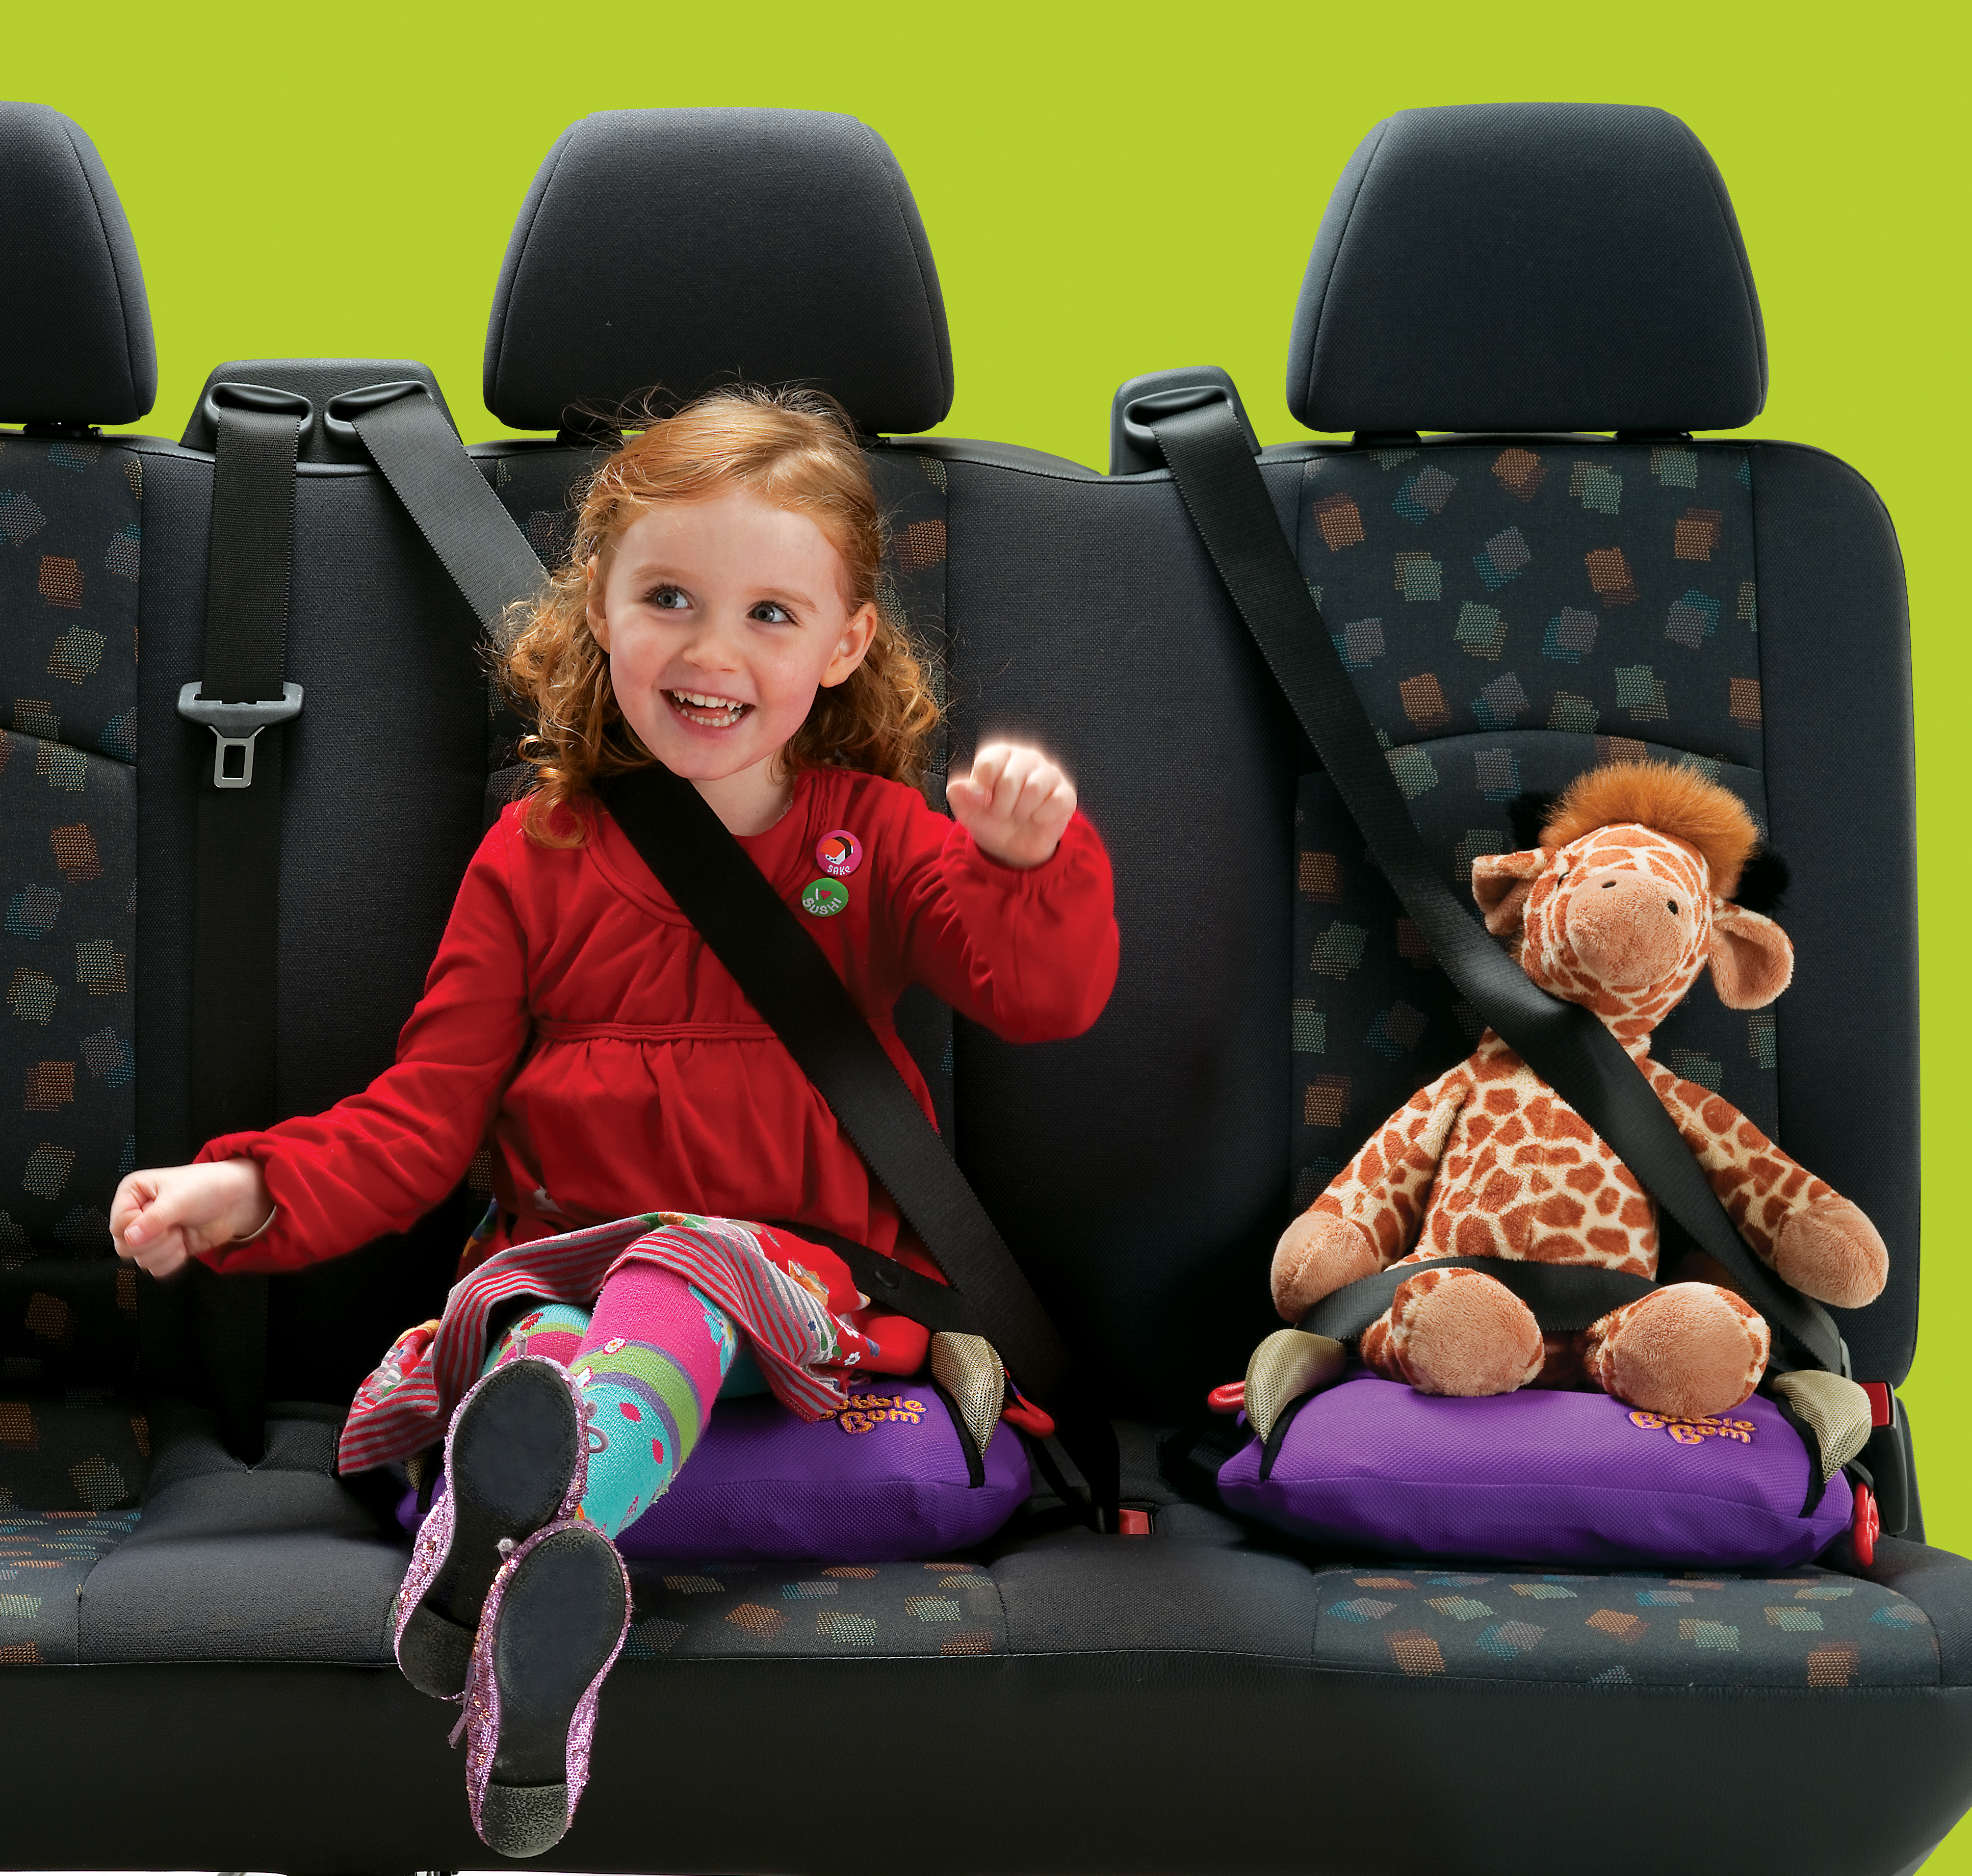 Пристегни ребенка в машине. Сиденье для ребенка в машину. Детские ремни безопасности для автомобиля. Ребёнок в автомобиле пристёгнут. Кресло безопасности для детей.